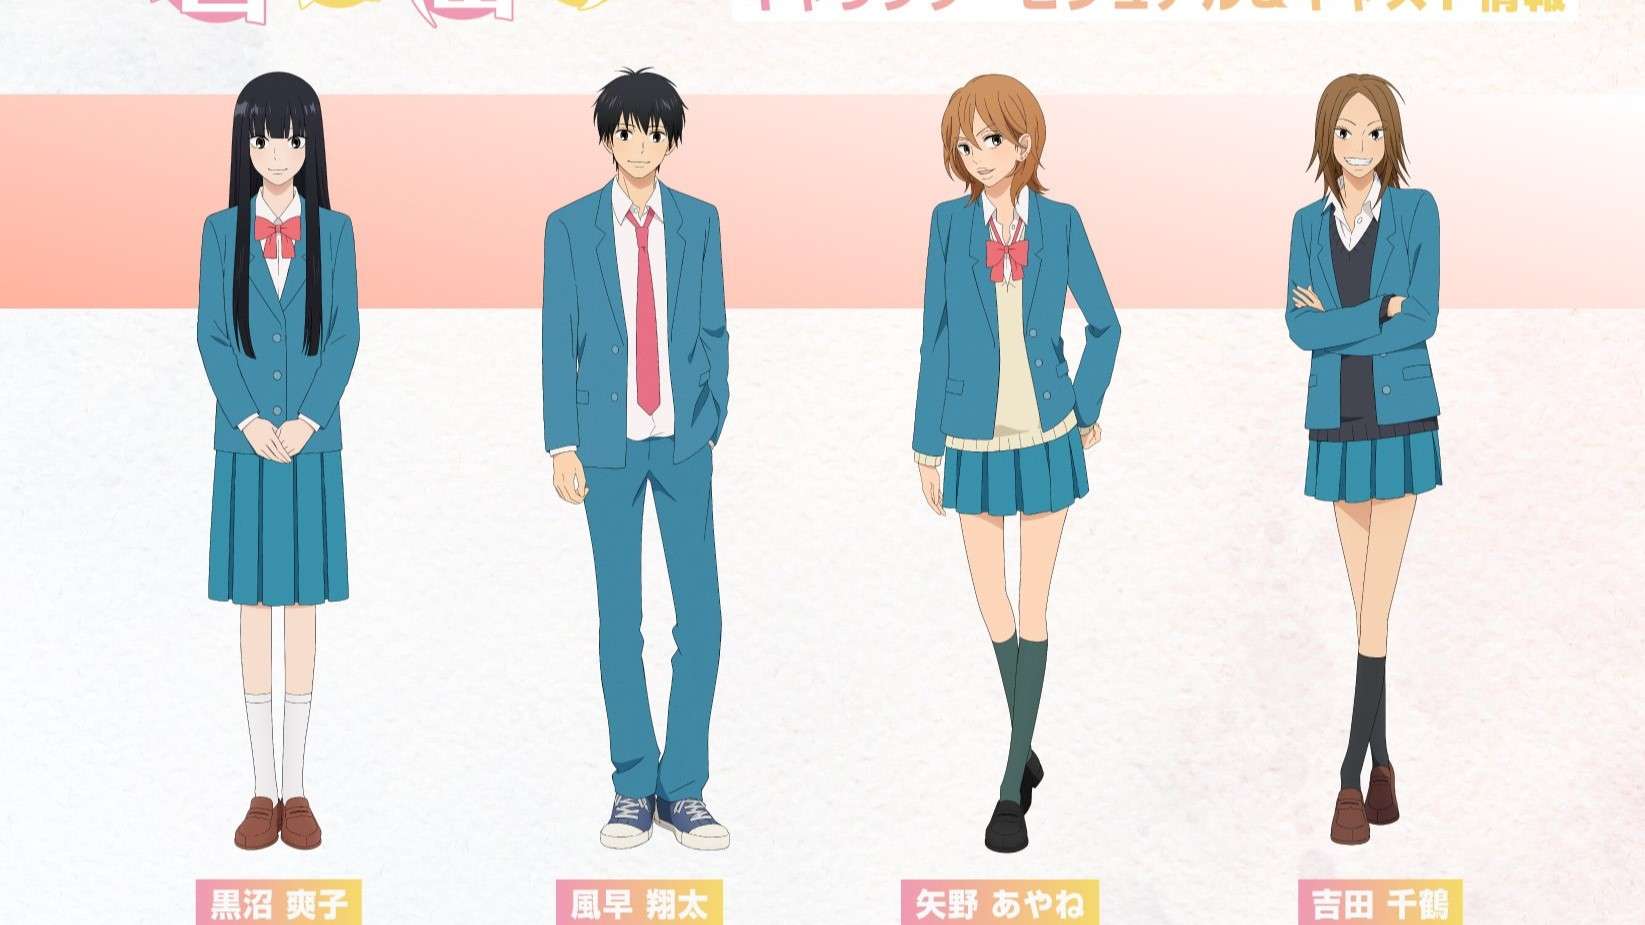 Tạo hình cho các nhân vật trong anime Kimi ni Todoke ss3 đã được hé lộ